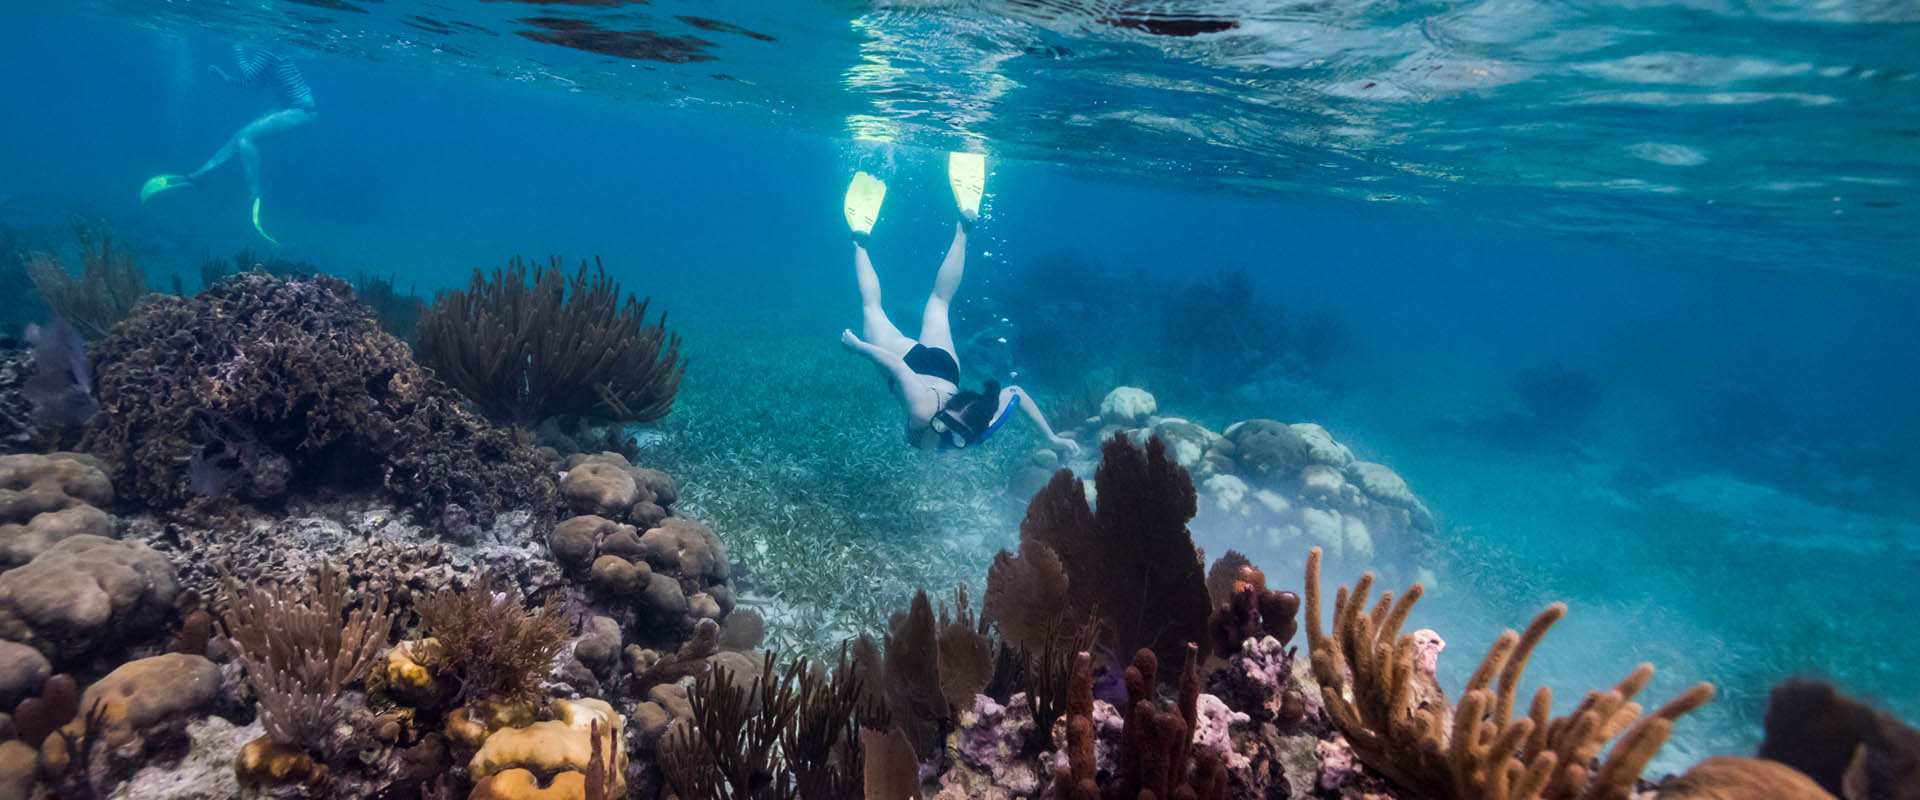 Turneffe Reef Liveaboard diving